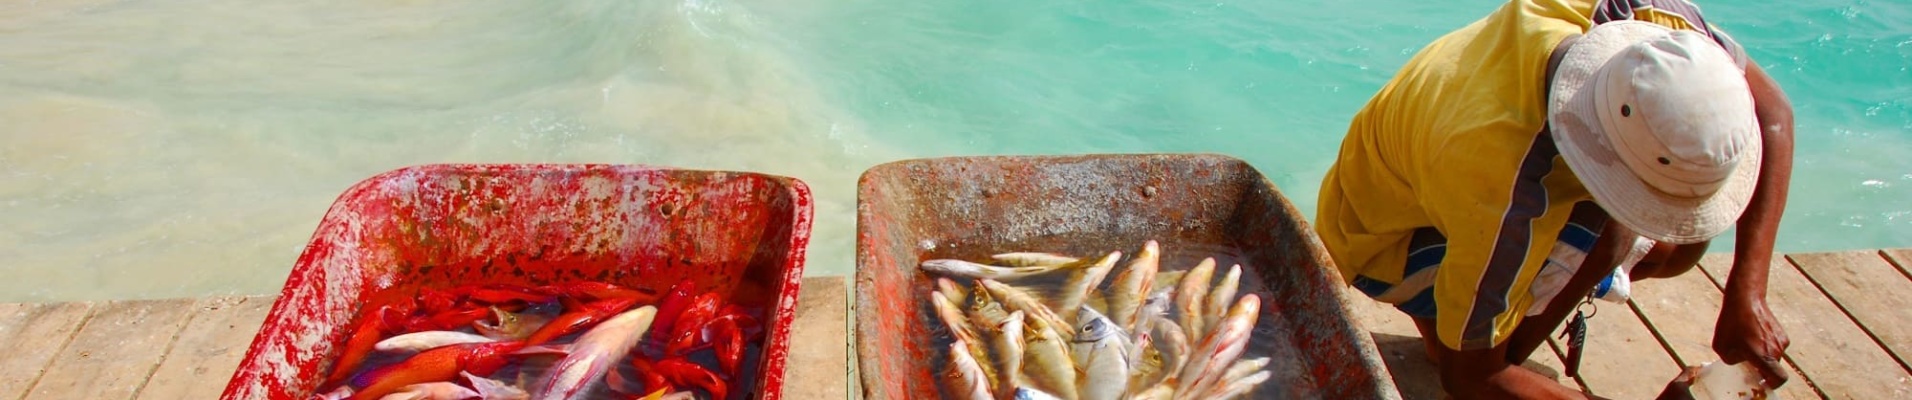 Pêcheur et poisson frais à Santa Maria, Ile de Sal, Cap Vert